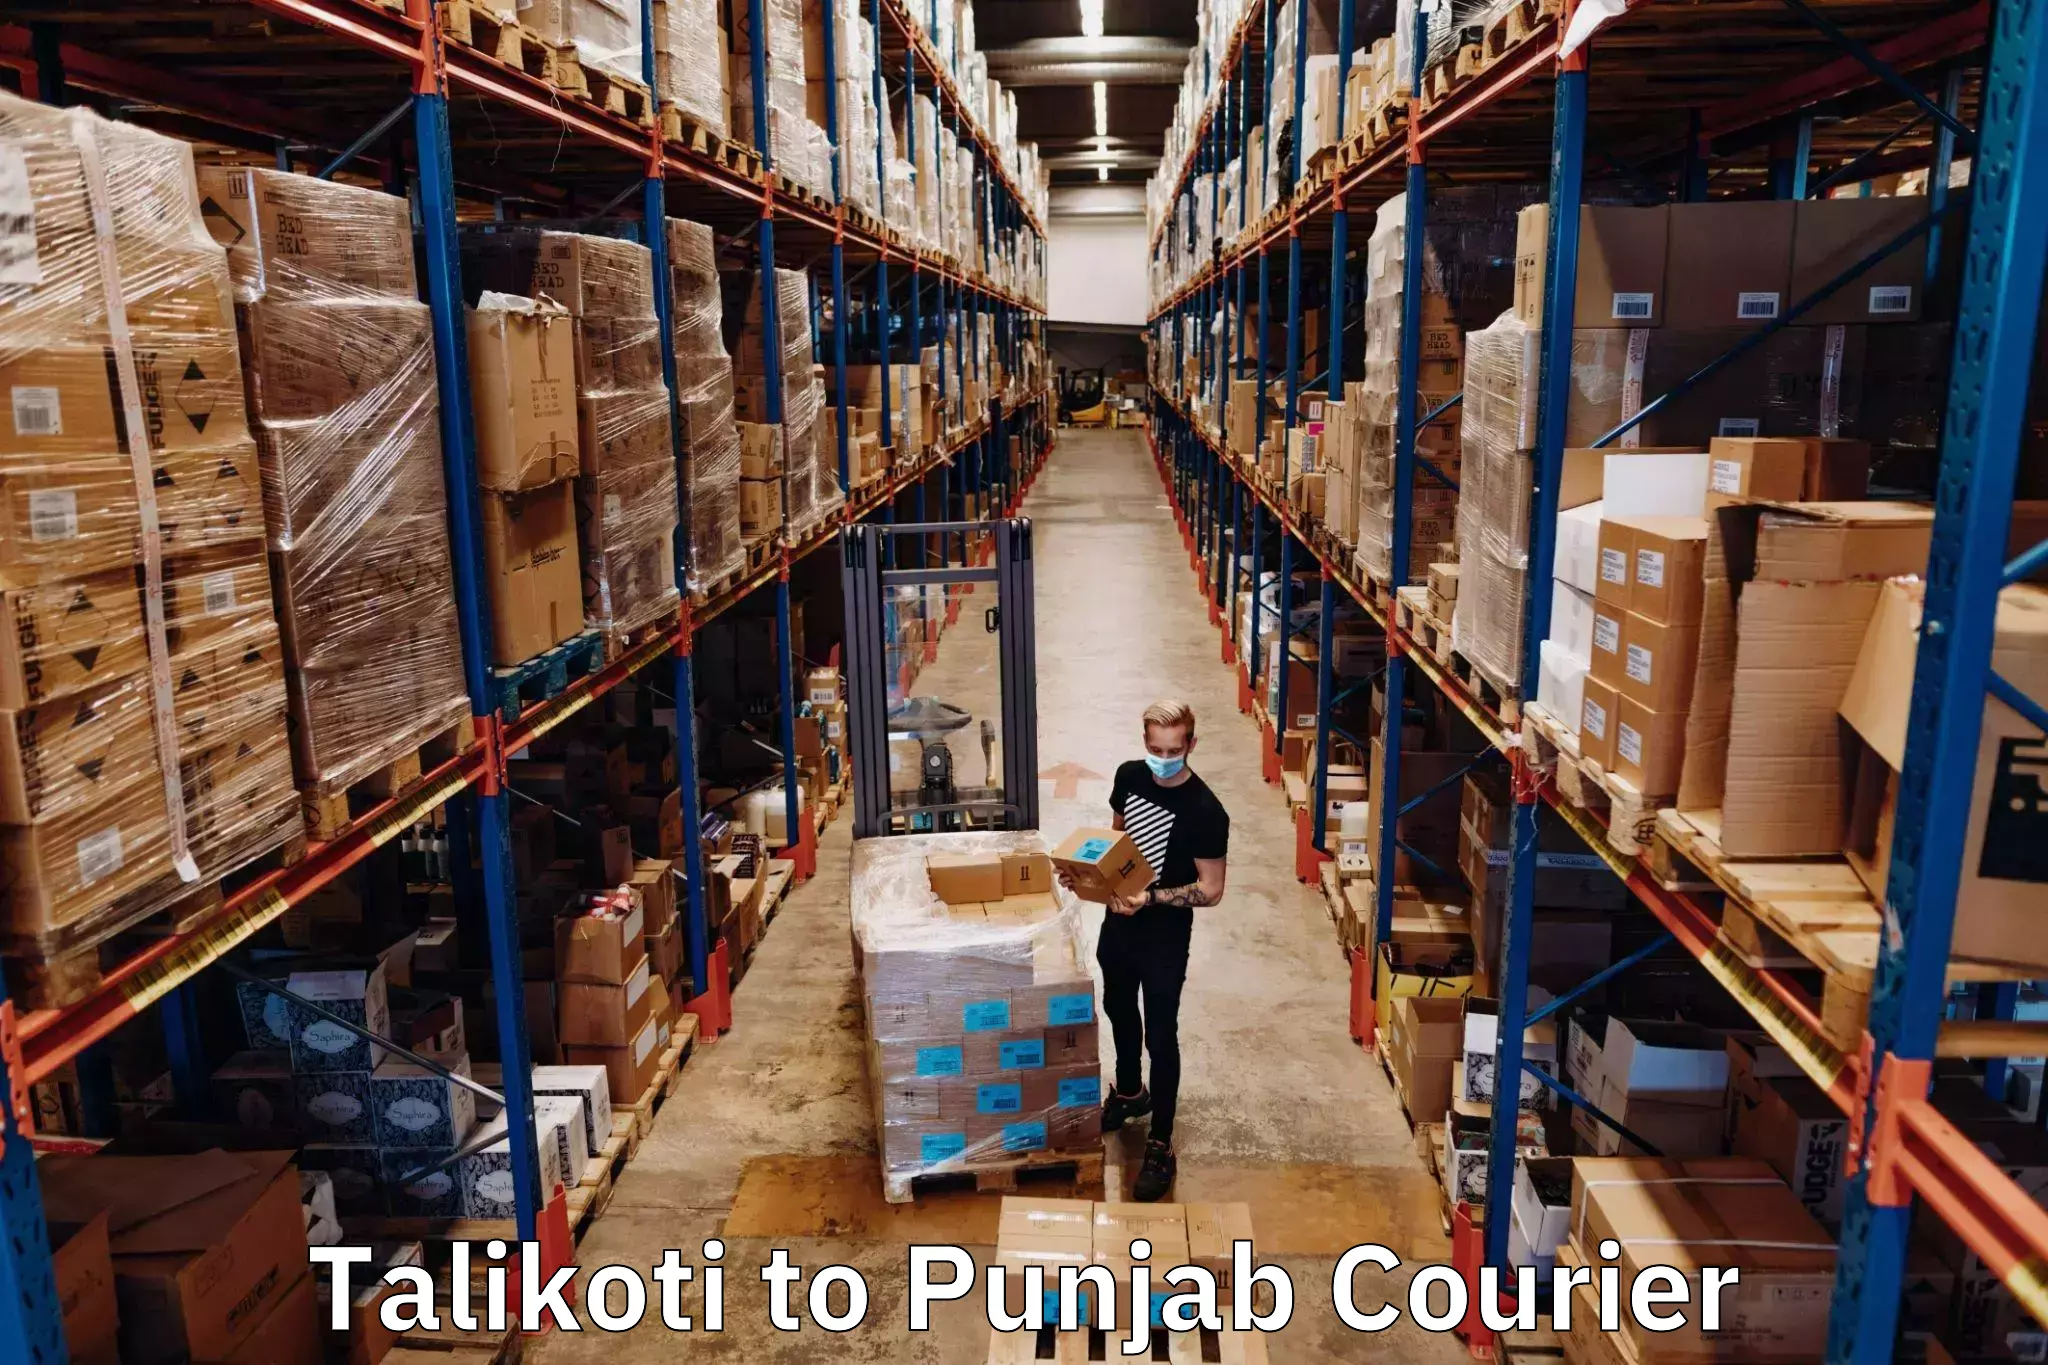 Ground shipping Talikoti to Punjab